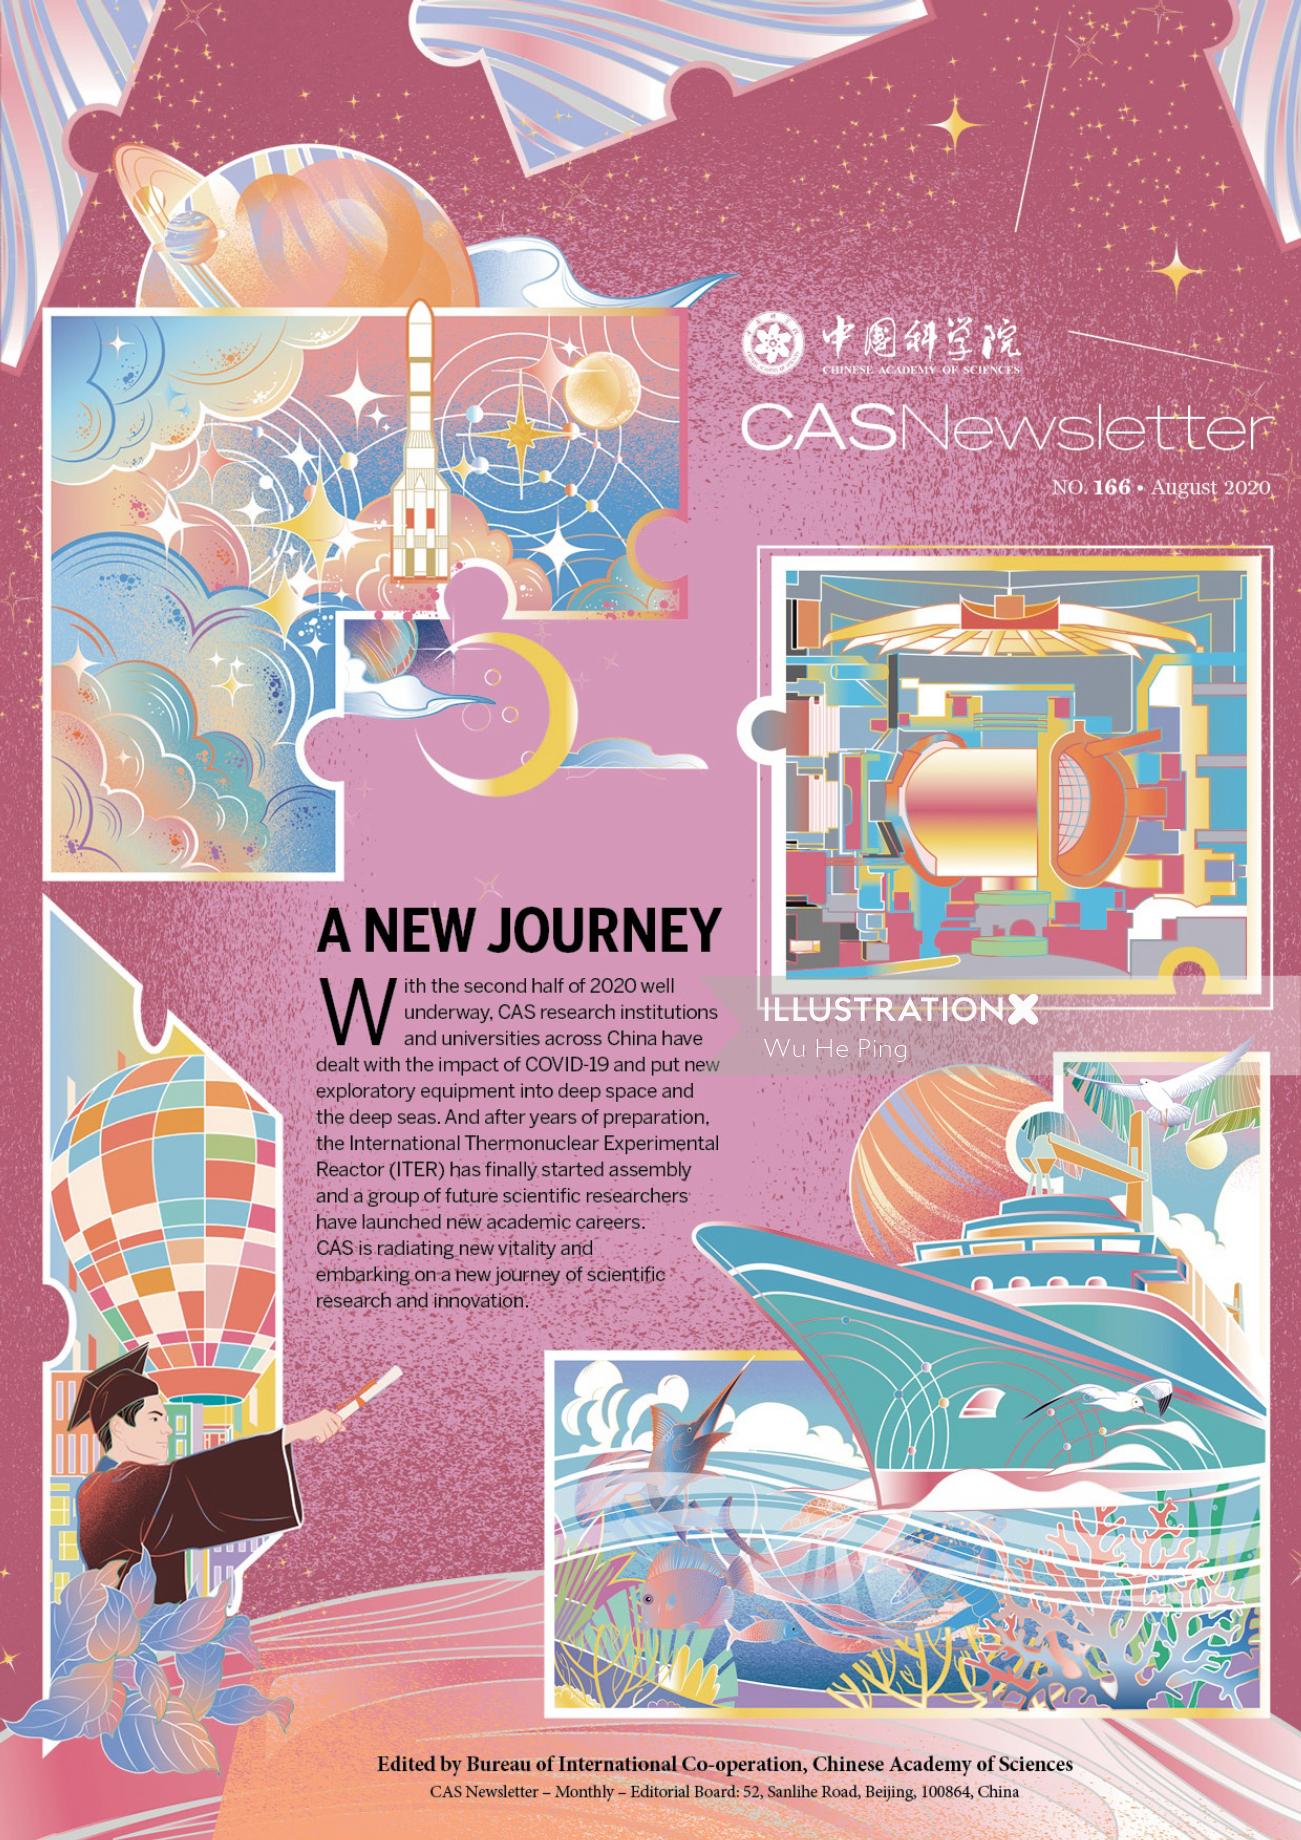 CAS Newsletter Magazine cover illustration 